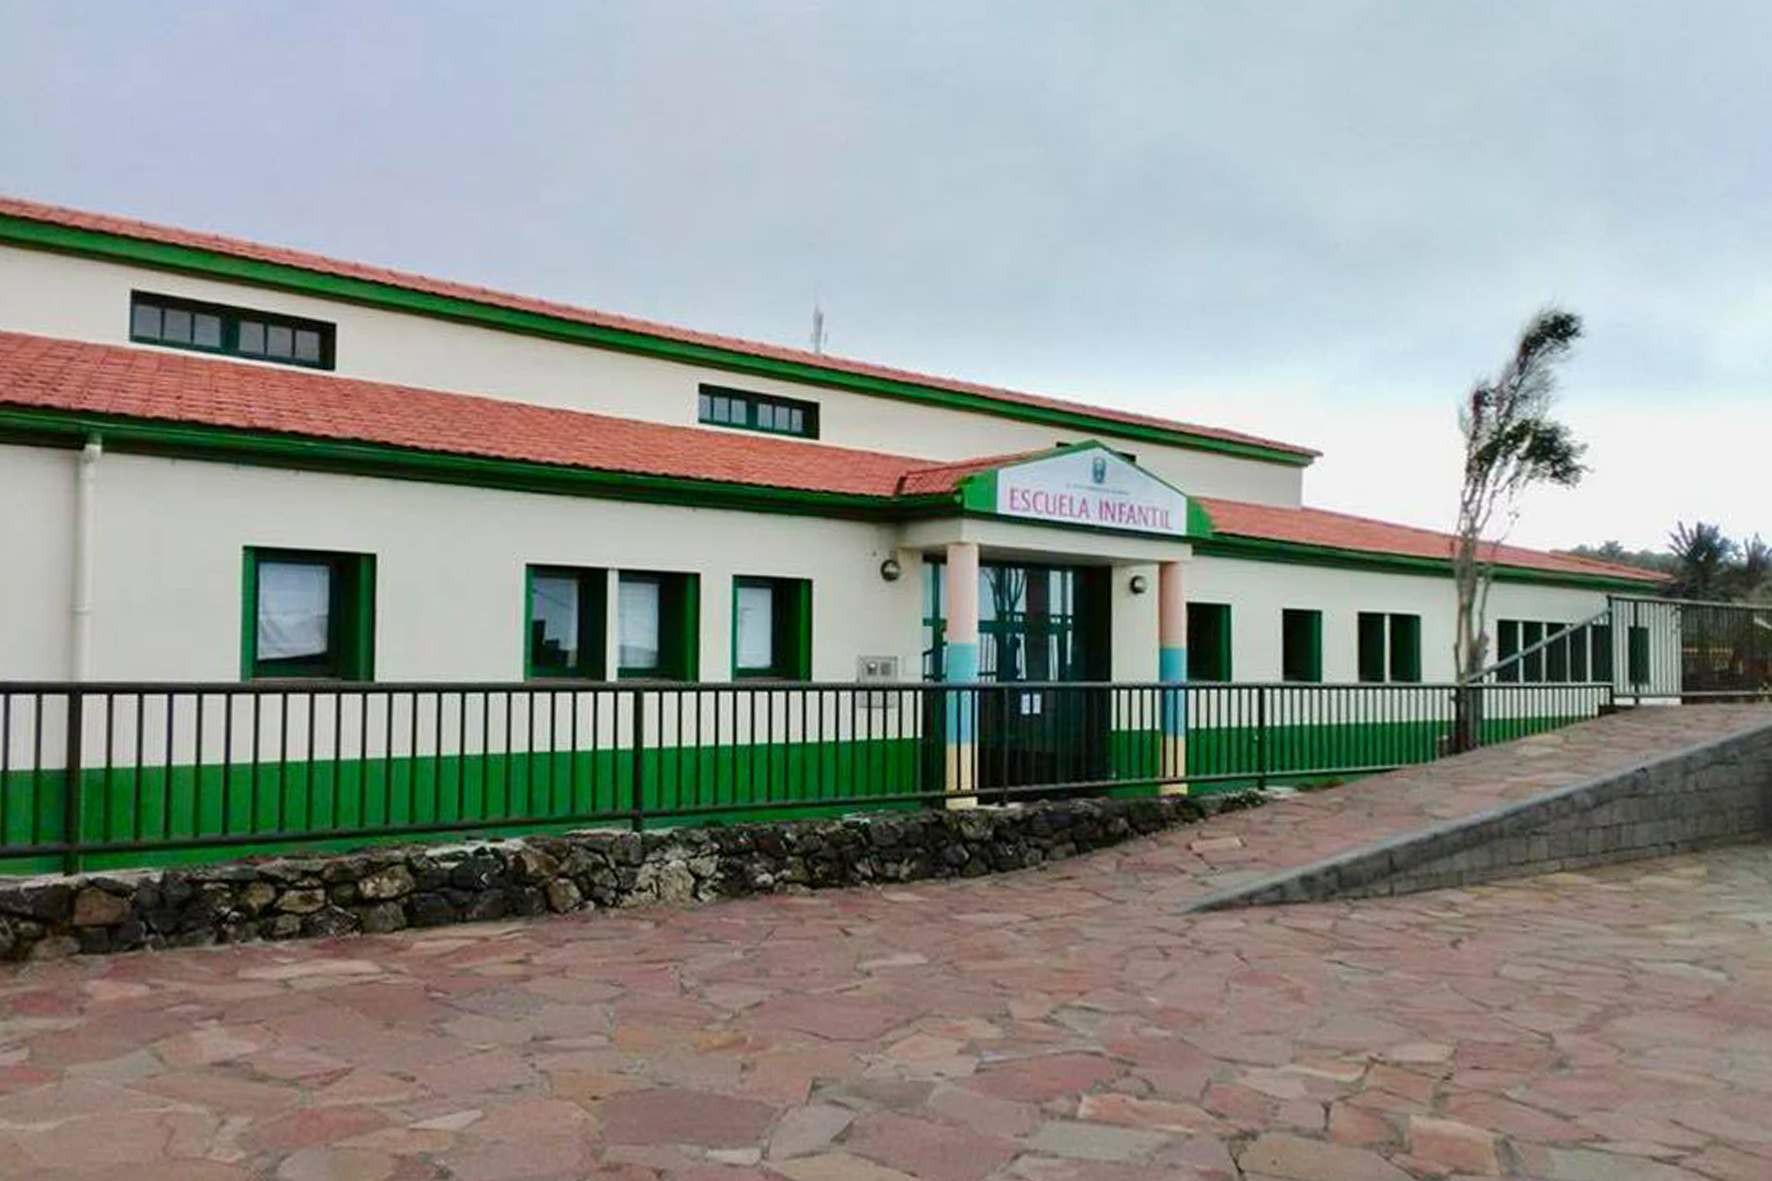 Las consultas de Pediatría se trasladarán a las dependencias de Escuela Infantil de Valverde